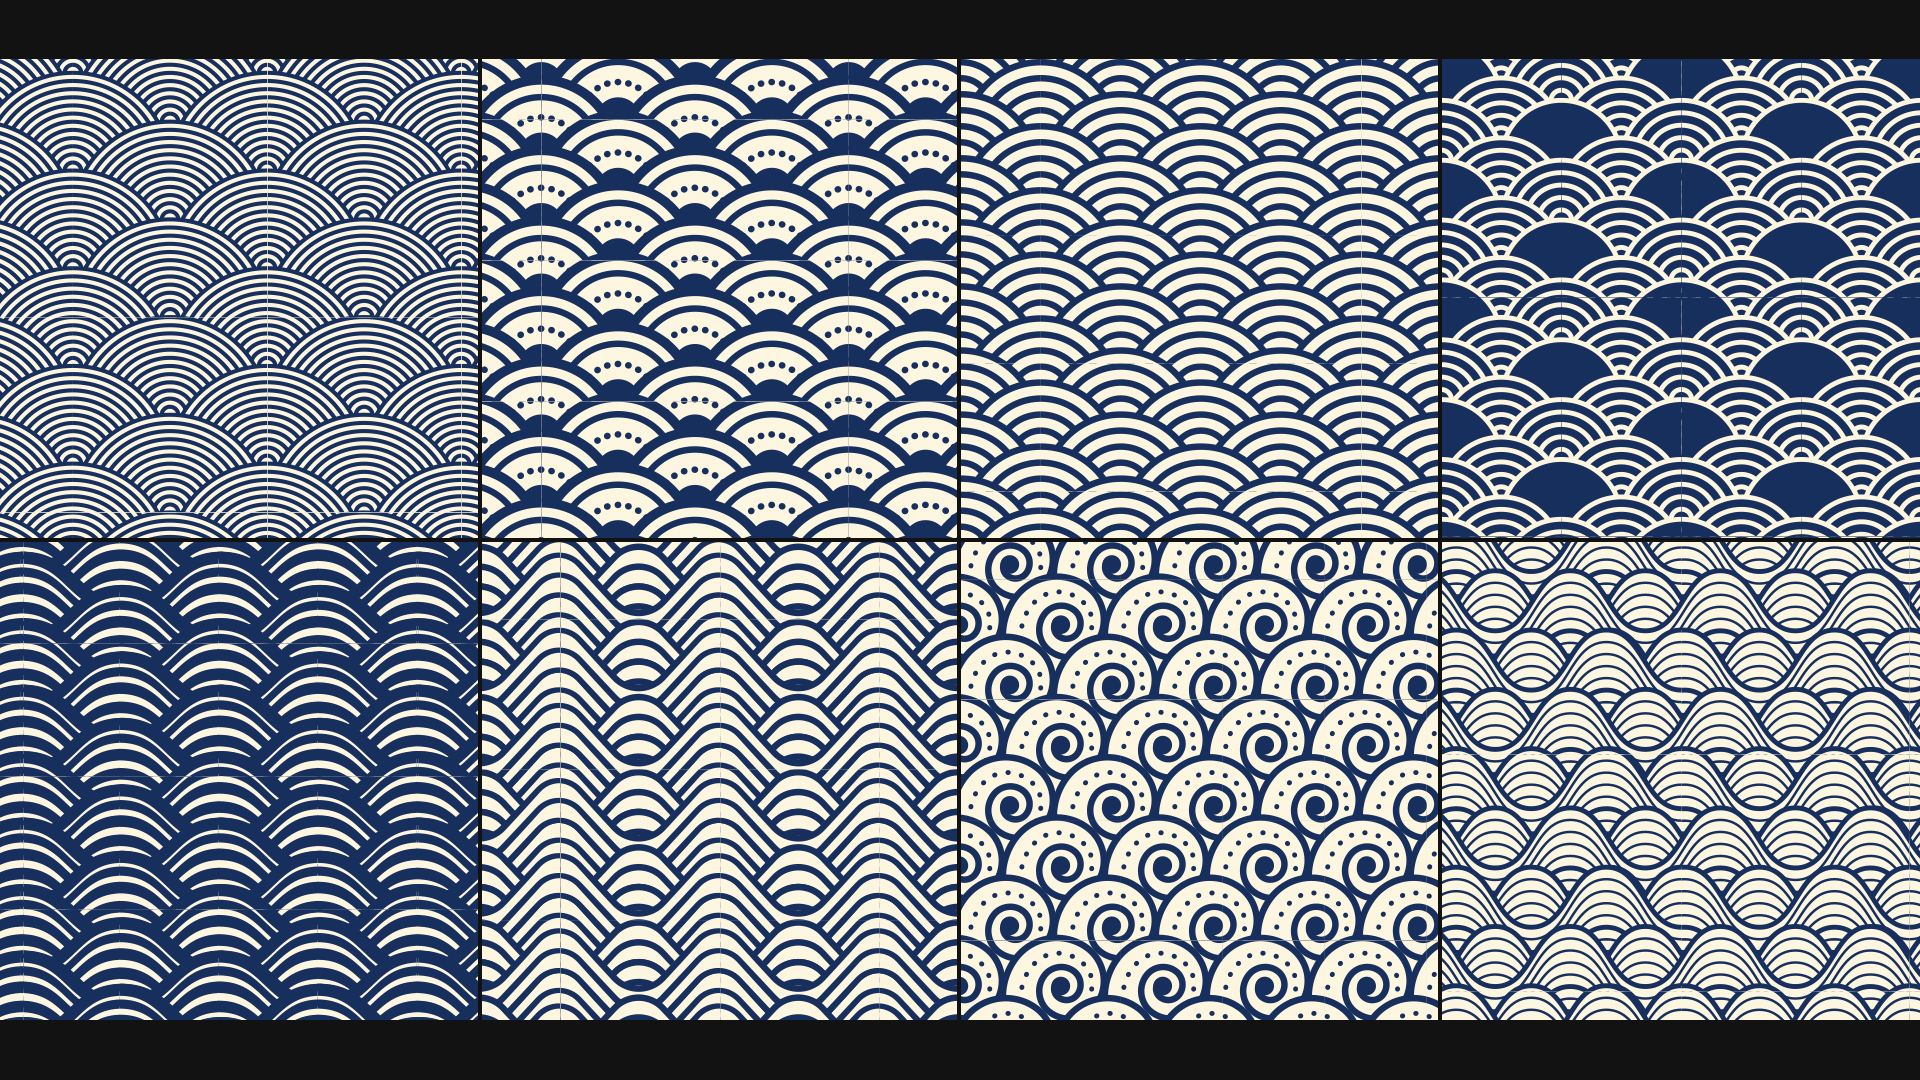 RYA-Olympic-patterns[1920x1080]